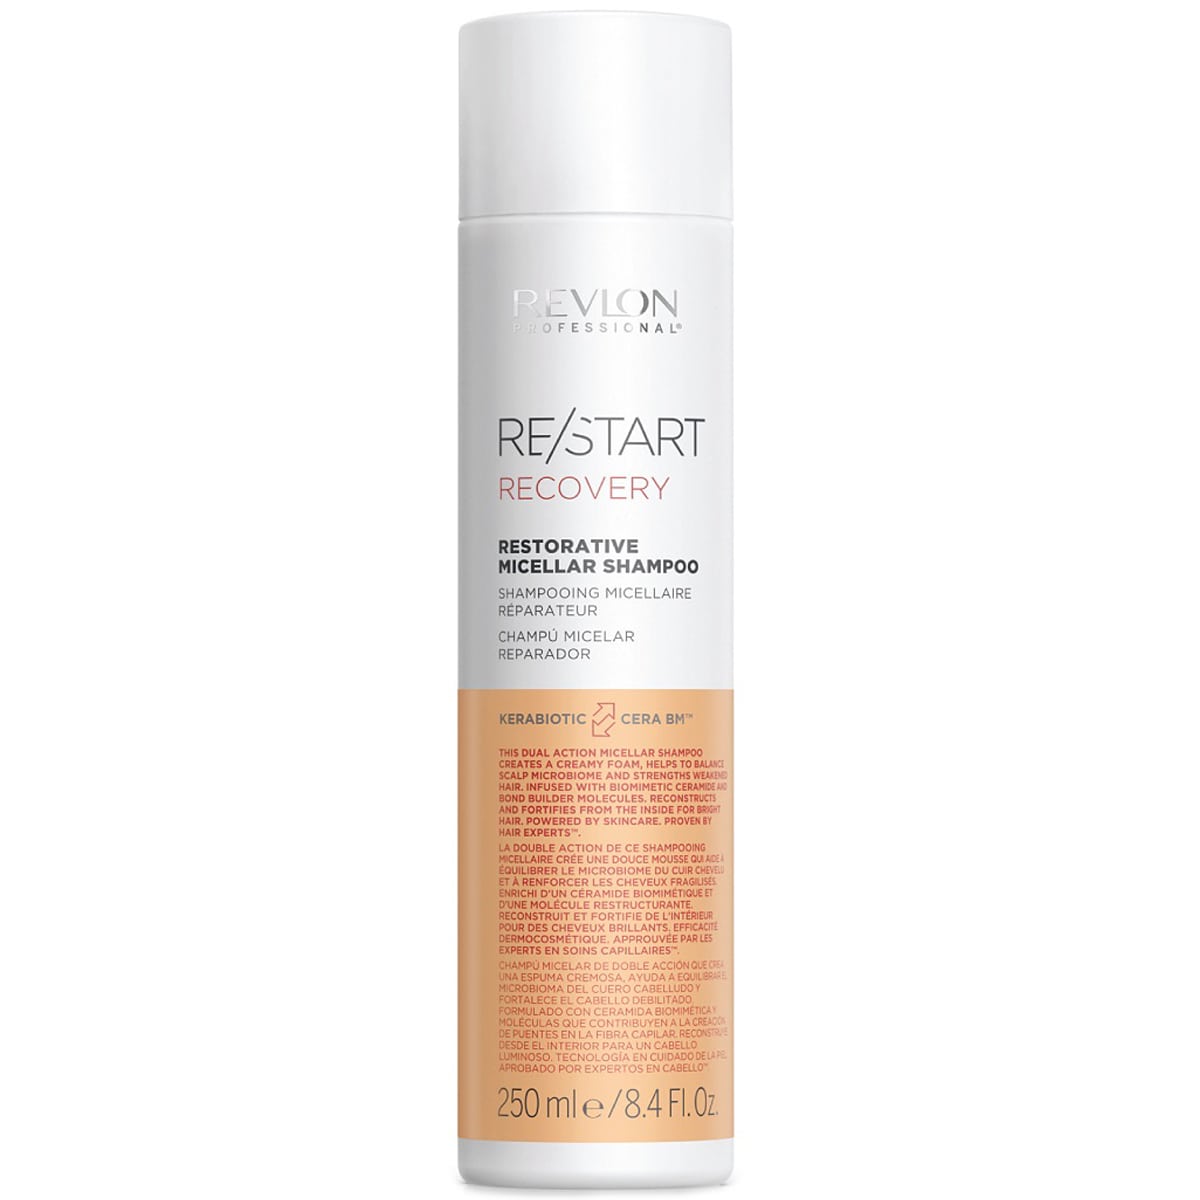 Revlon Professional Restorative Micellar Shampoo Мицеллярный шампунь для поврежденных волос, 250 мл (Revlon Professional, Restart)